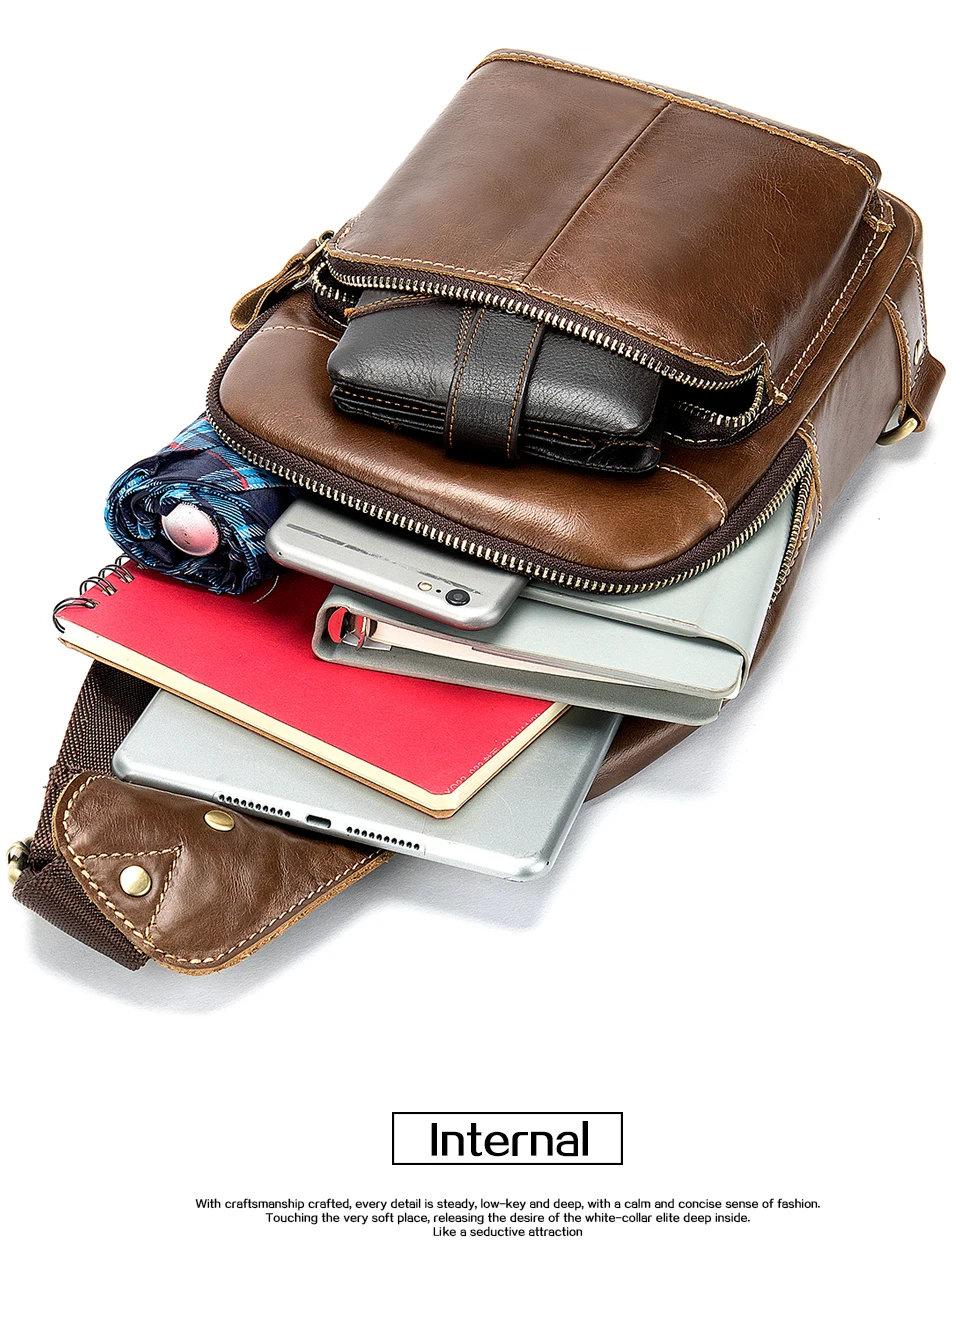 Мужская сумка через плечо WESTAL, натуральная кожа, слинг/нагрудные сумки, повседневные сумки через плечо для мужчин, сумка через плечо, зарядка через USB, нагрудная сумка 8575